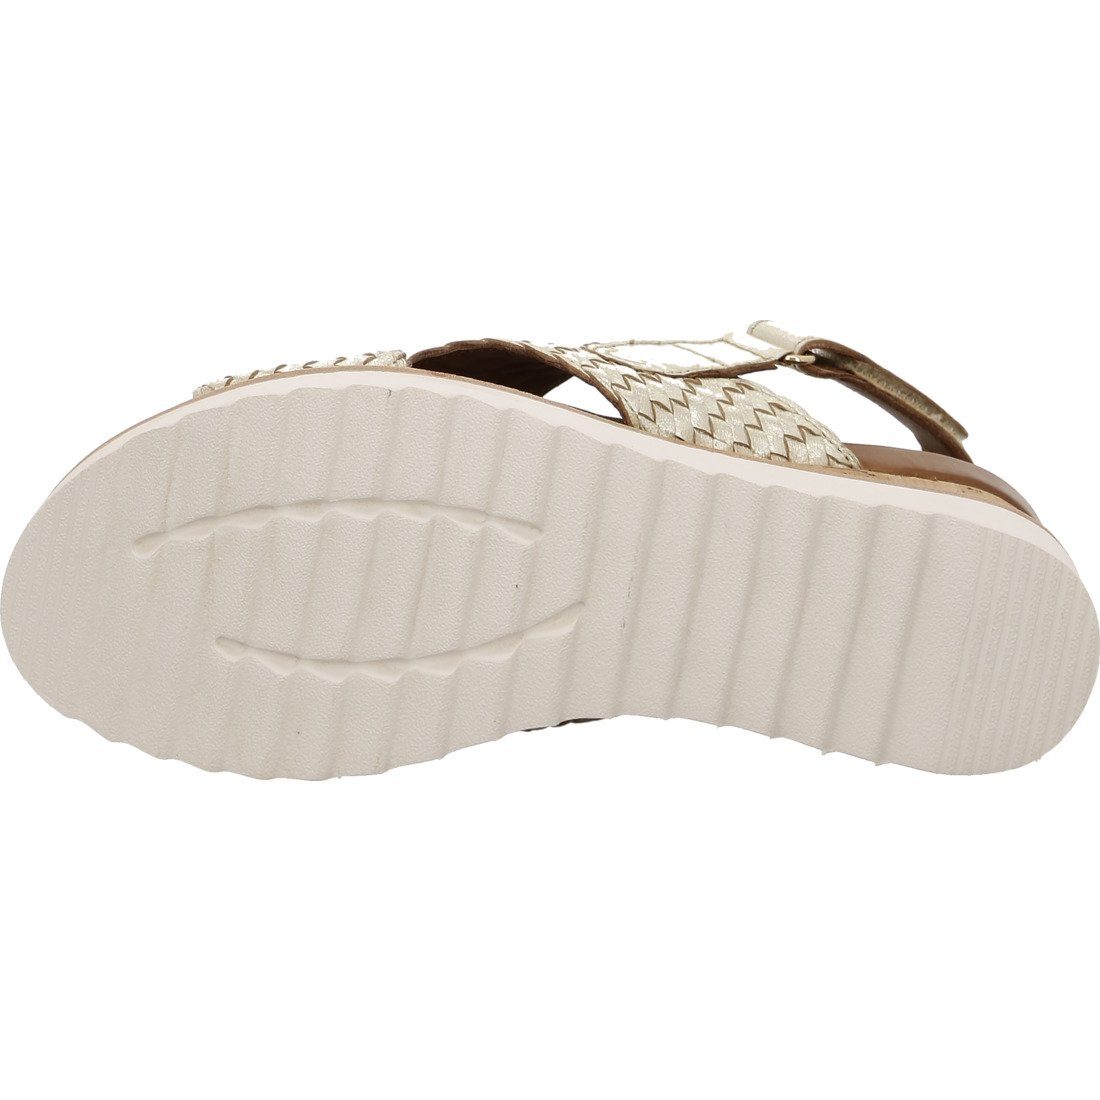 Sandalette Damen 048037 beige Ara - Leder Valencia Sandalette Schuhe, Ara